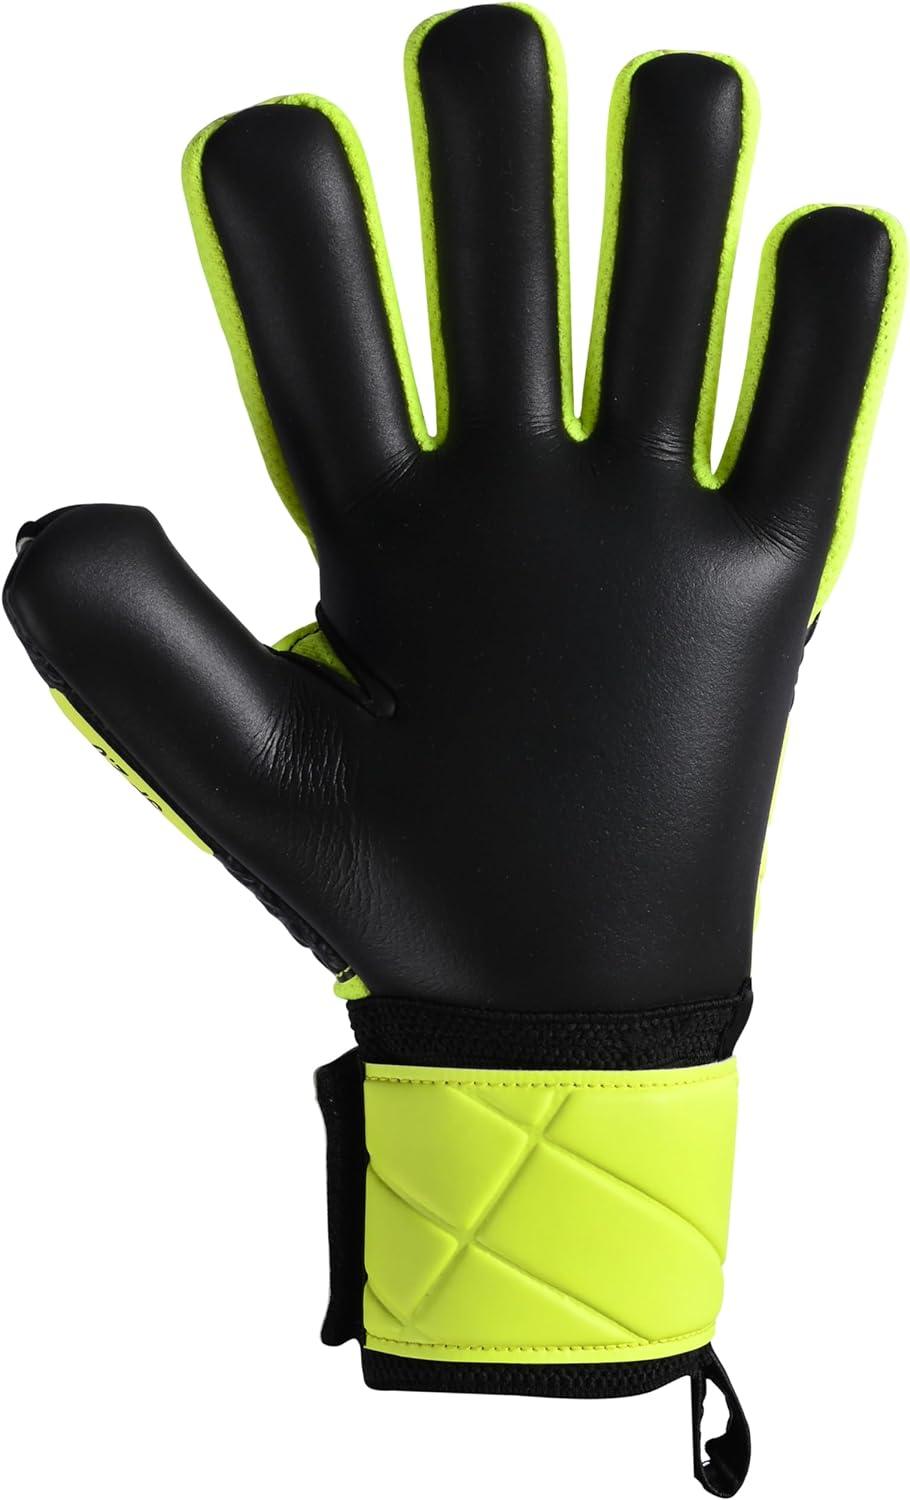 Yellow goalkeeper gloves for children